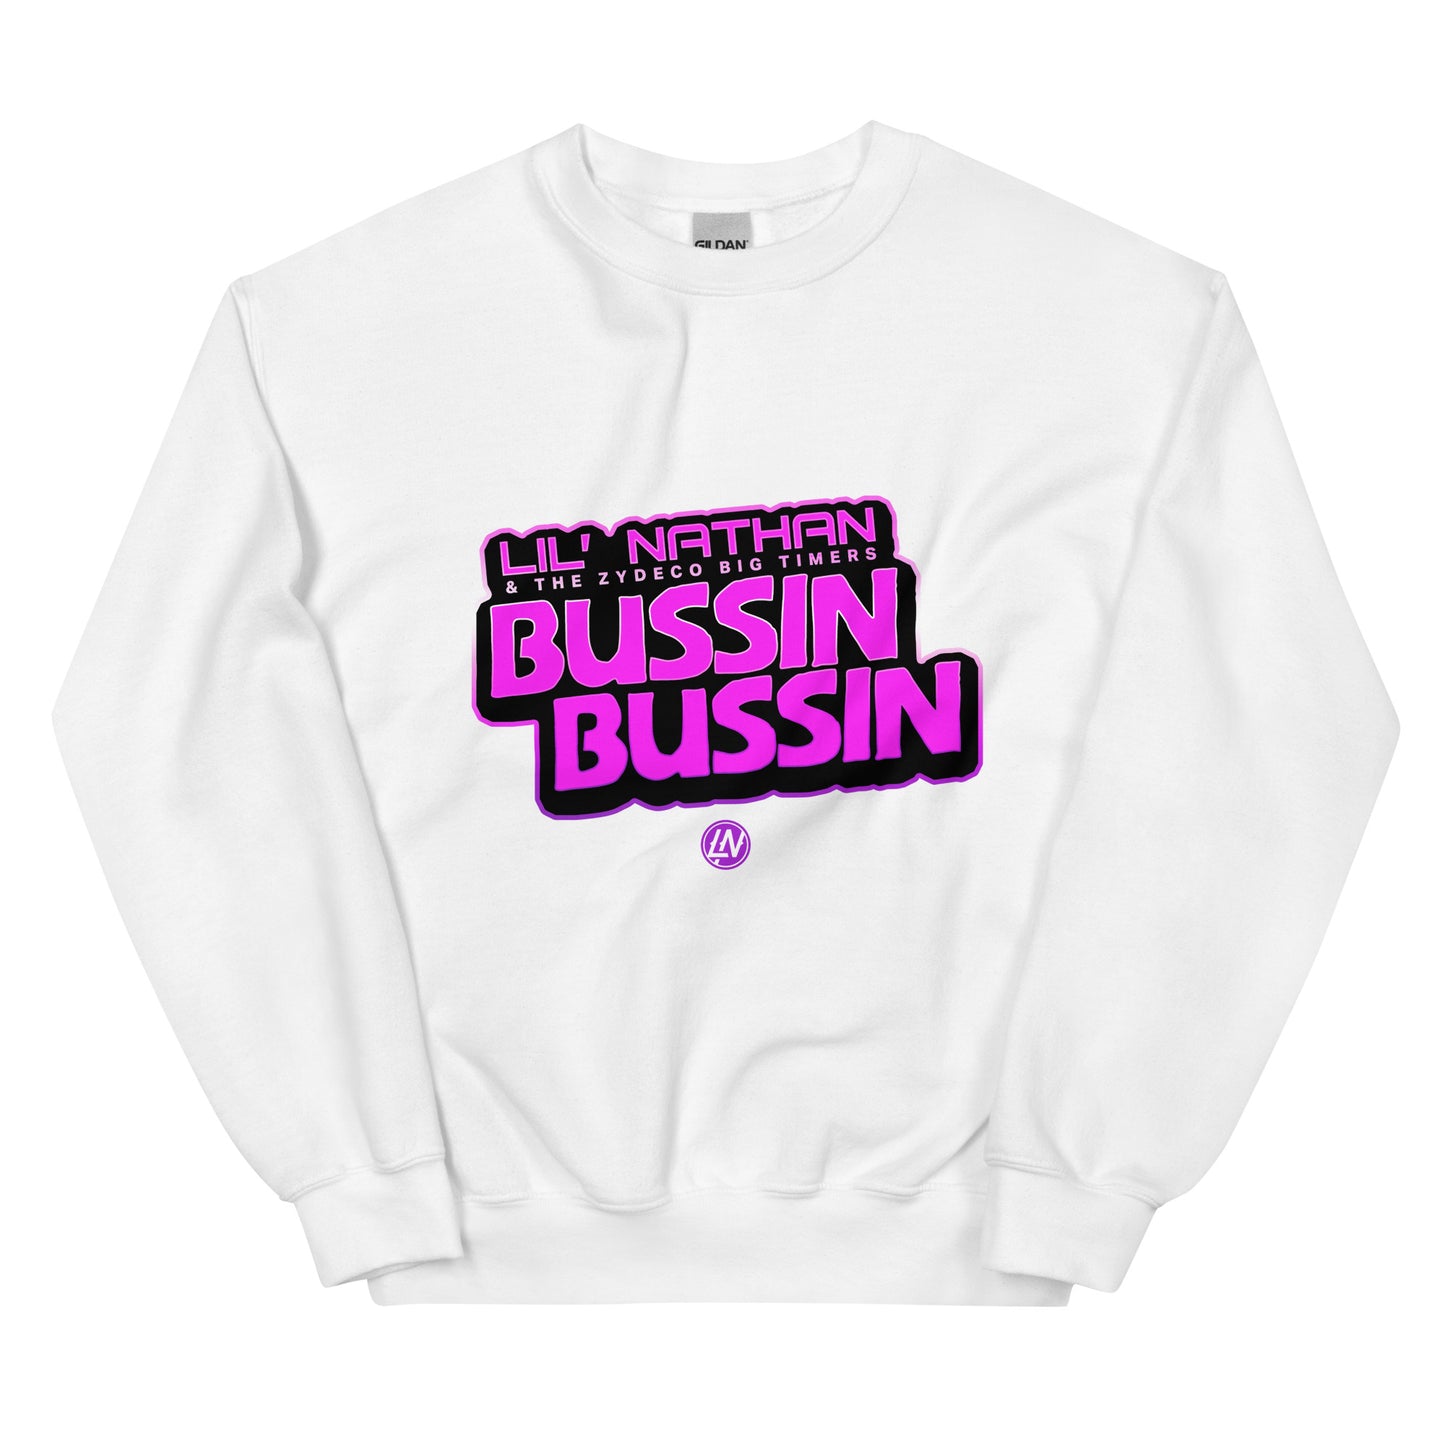 "Bussin Bussin" Unisex Sweatshirt (Purple Print)